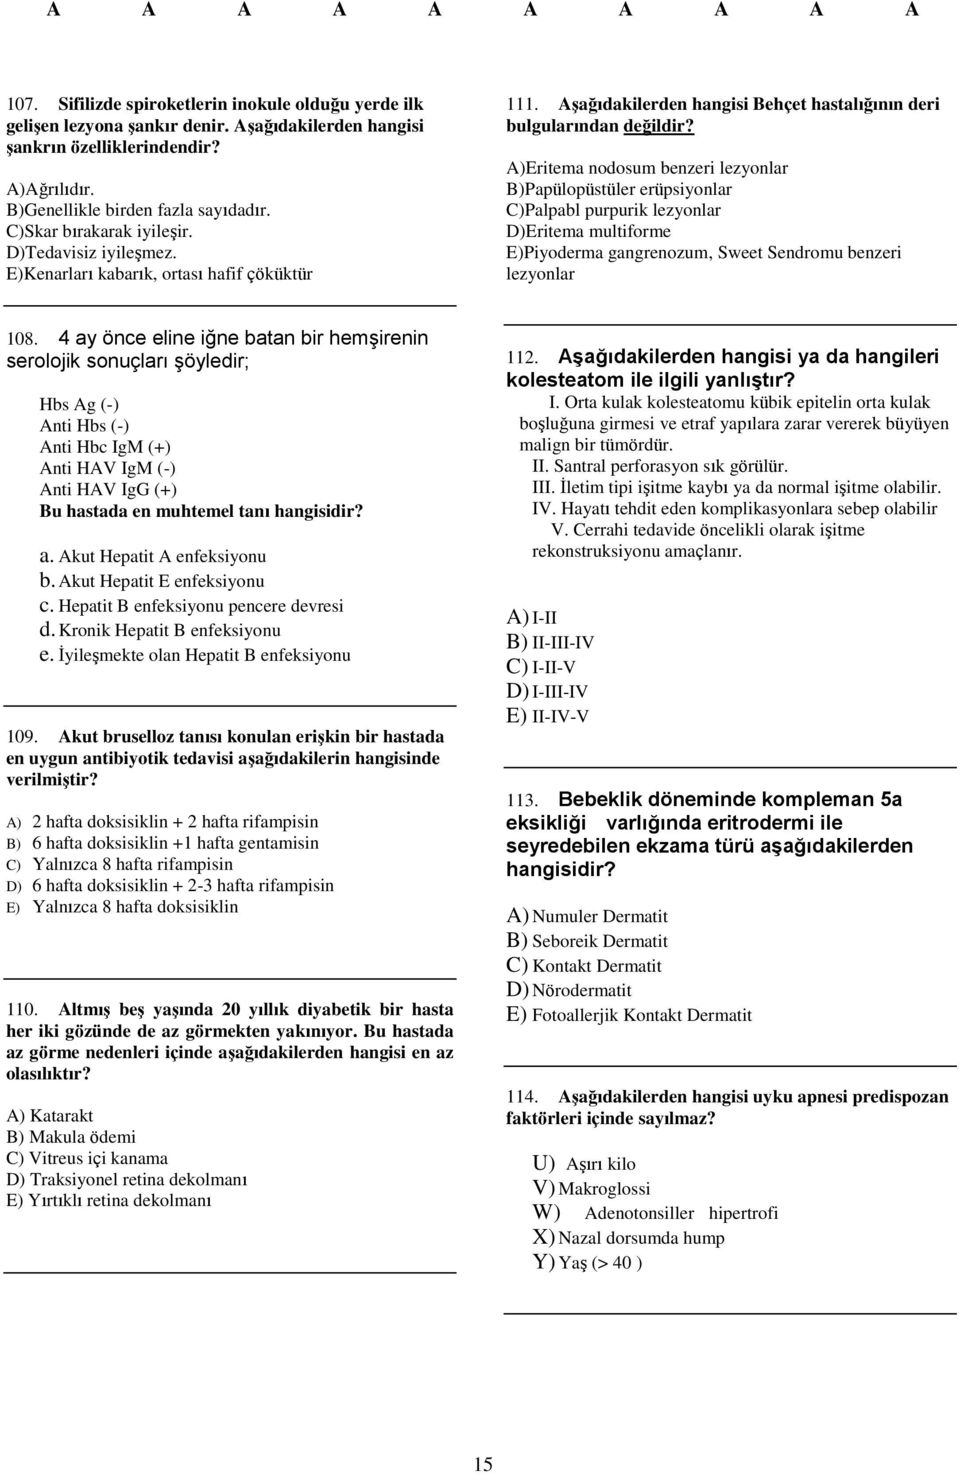 A)Eritema nodosum benzeri lezyonlar B)Papülopüstüler erüpsiyonlar C)Palpabl purpurik lezyonlar D)Eritema multiforme E)Piyoderma gangrenozum, Sweet Sendromu benzeri lezyonlar 108.